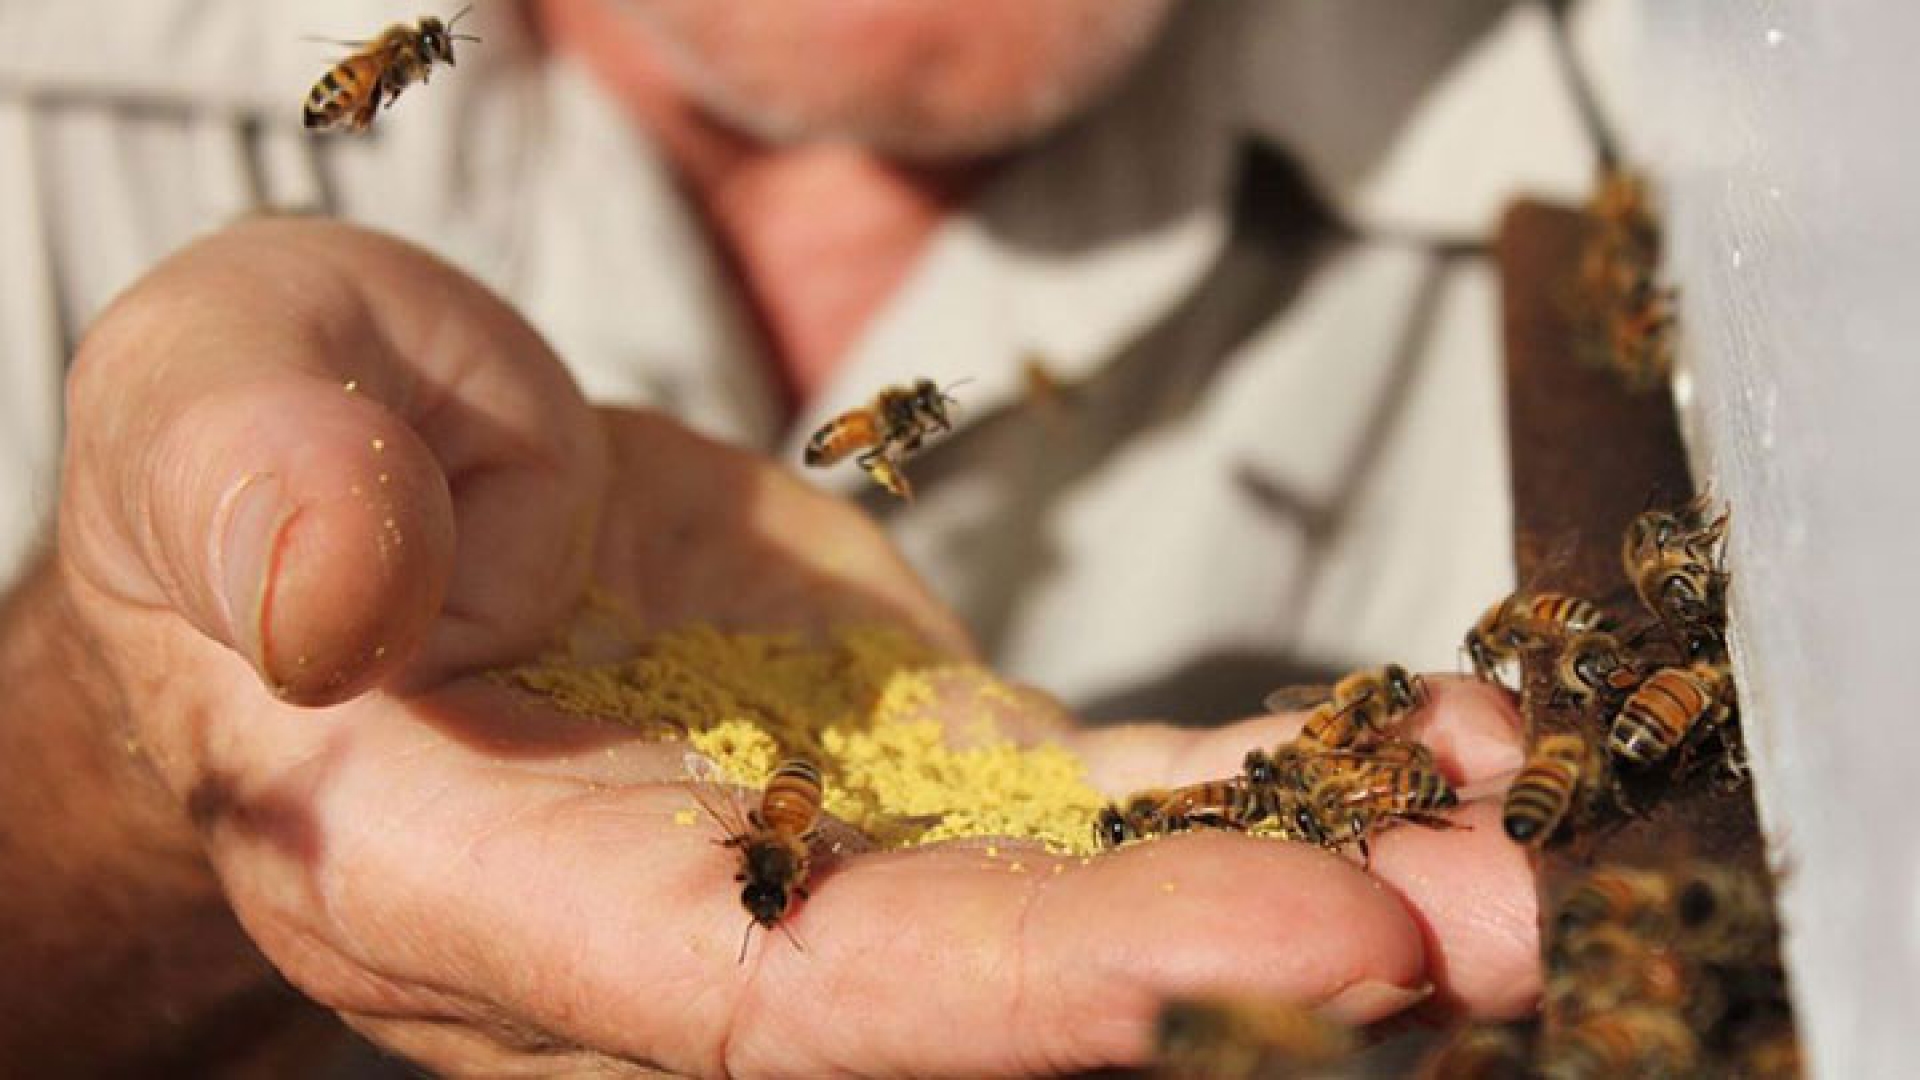 Bombero Frustración recibo La apiterapia, el tratamiento médico que utiliza abejas